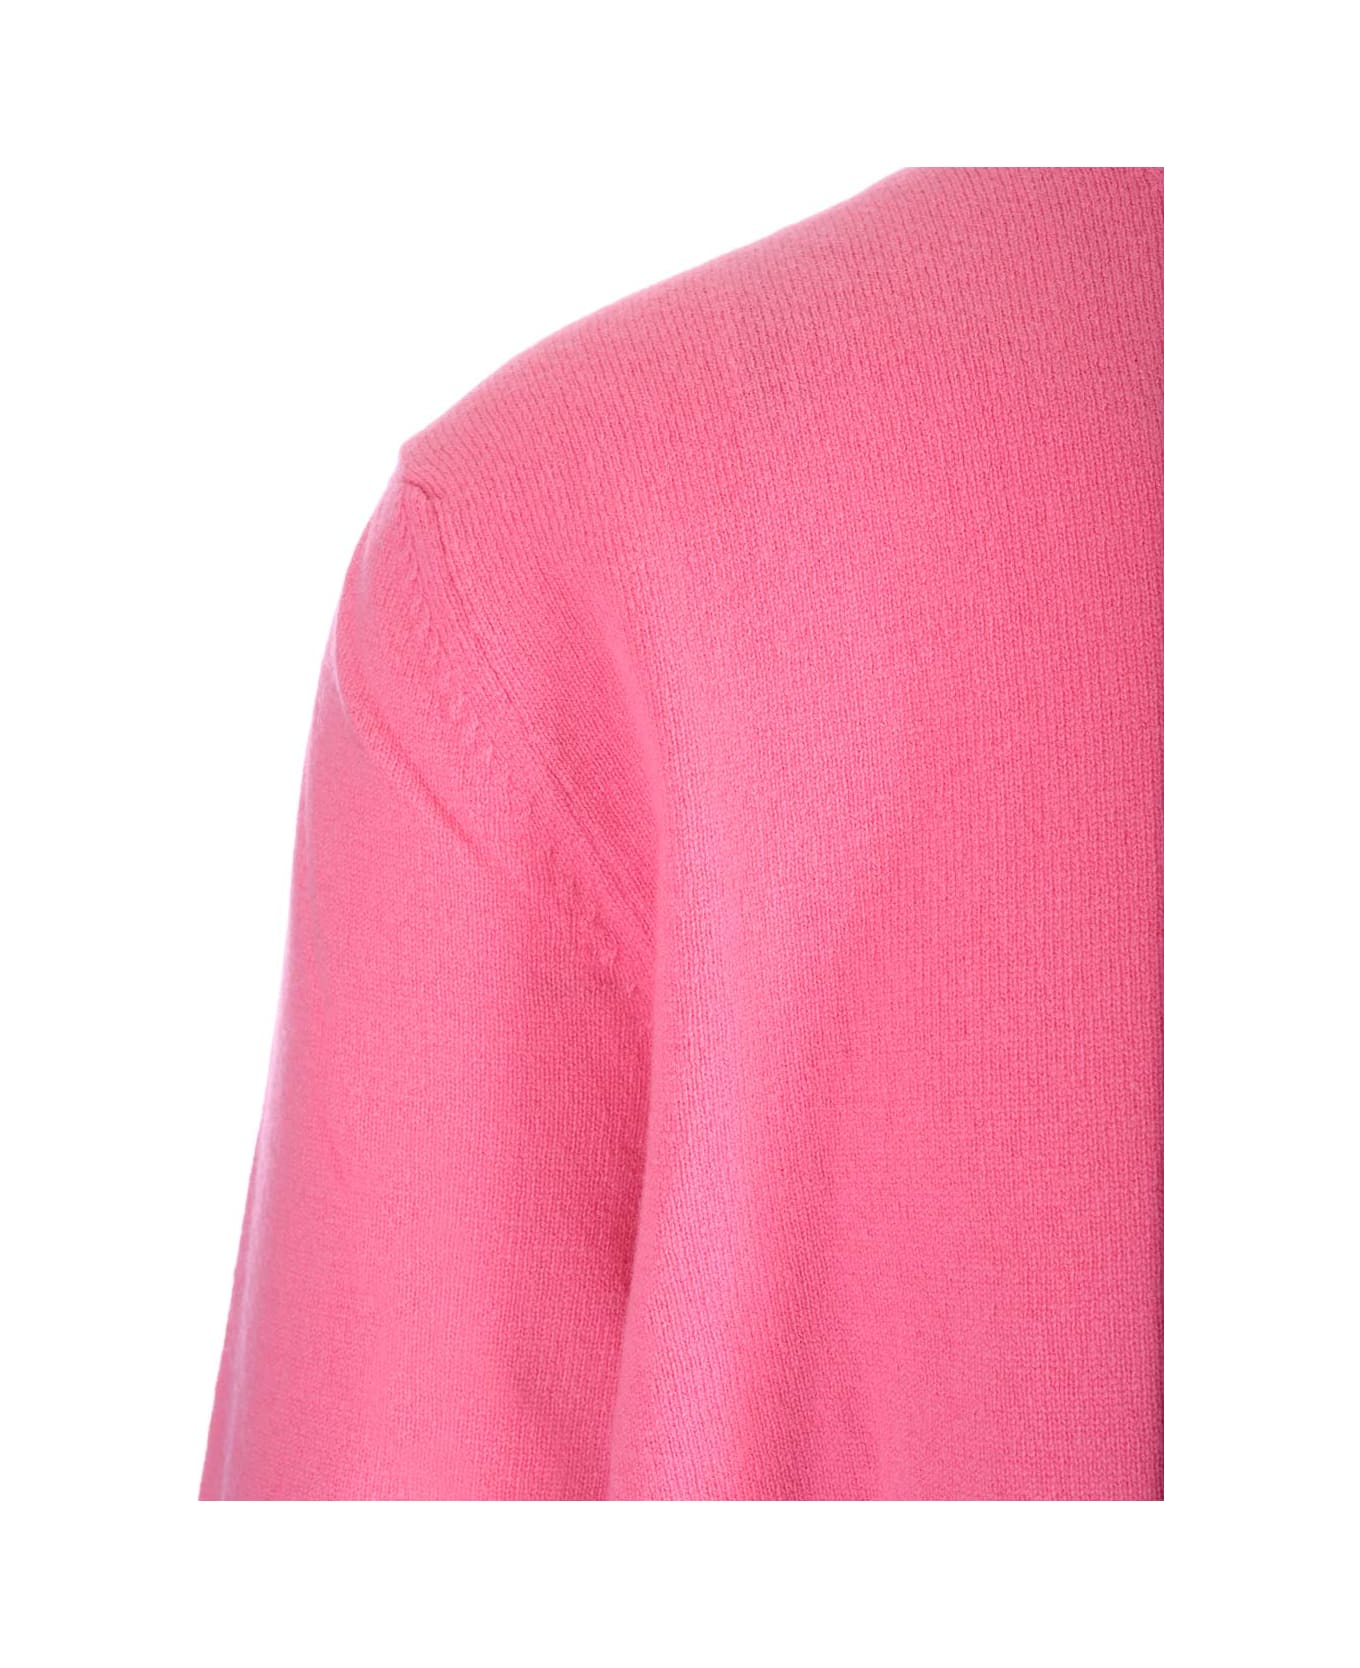 Comme des Garçons Shirt Pink Wool Sweater - Pink